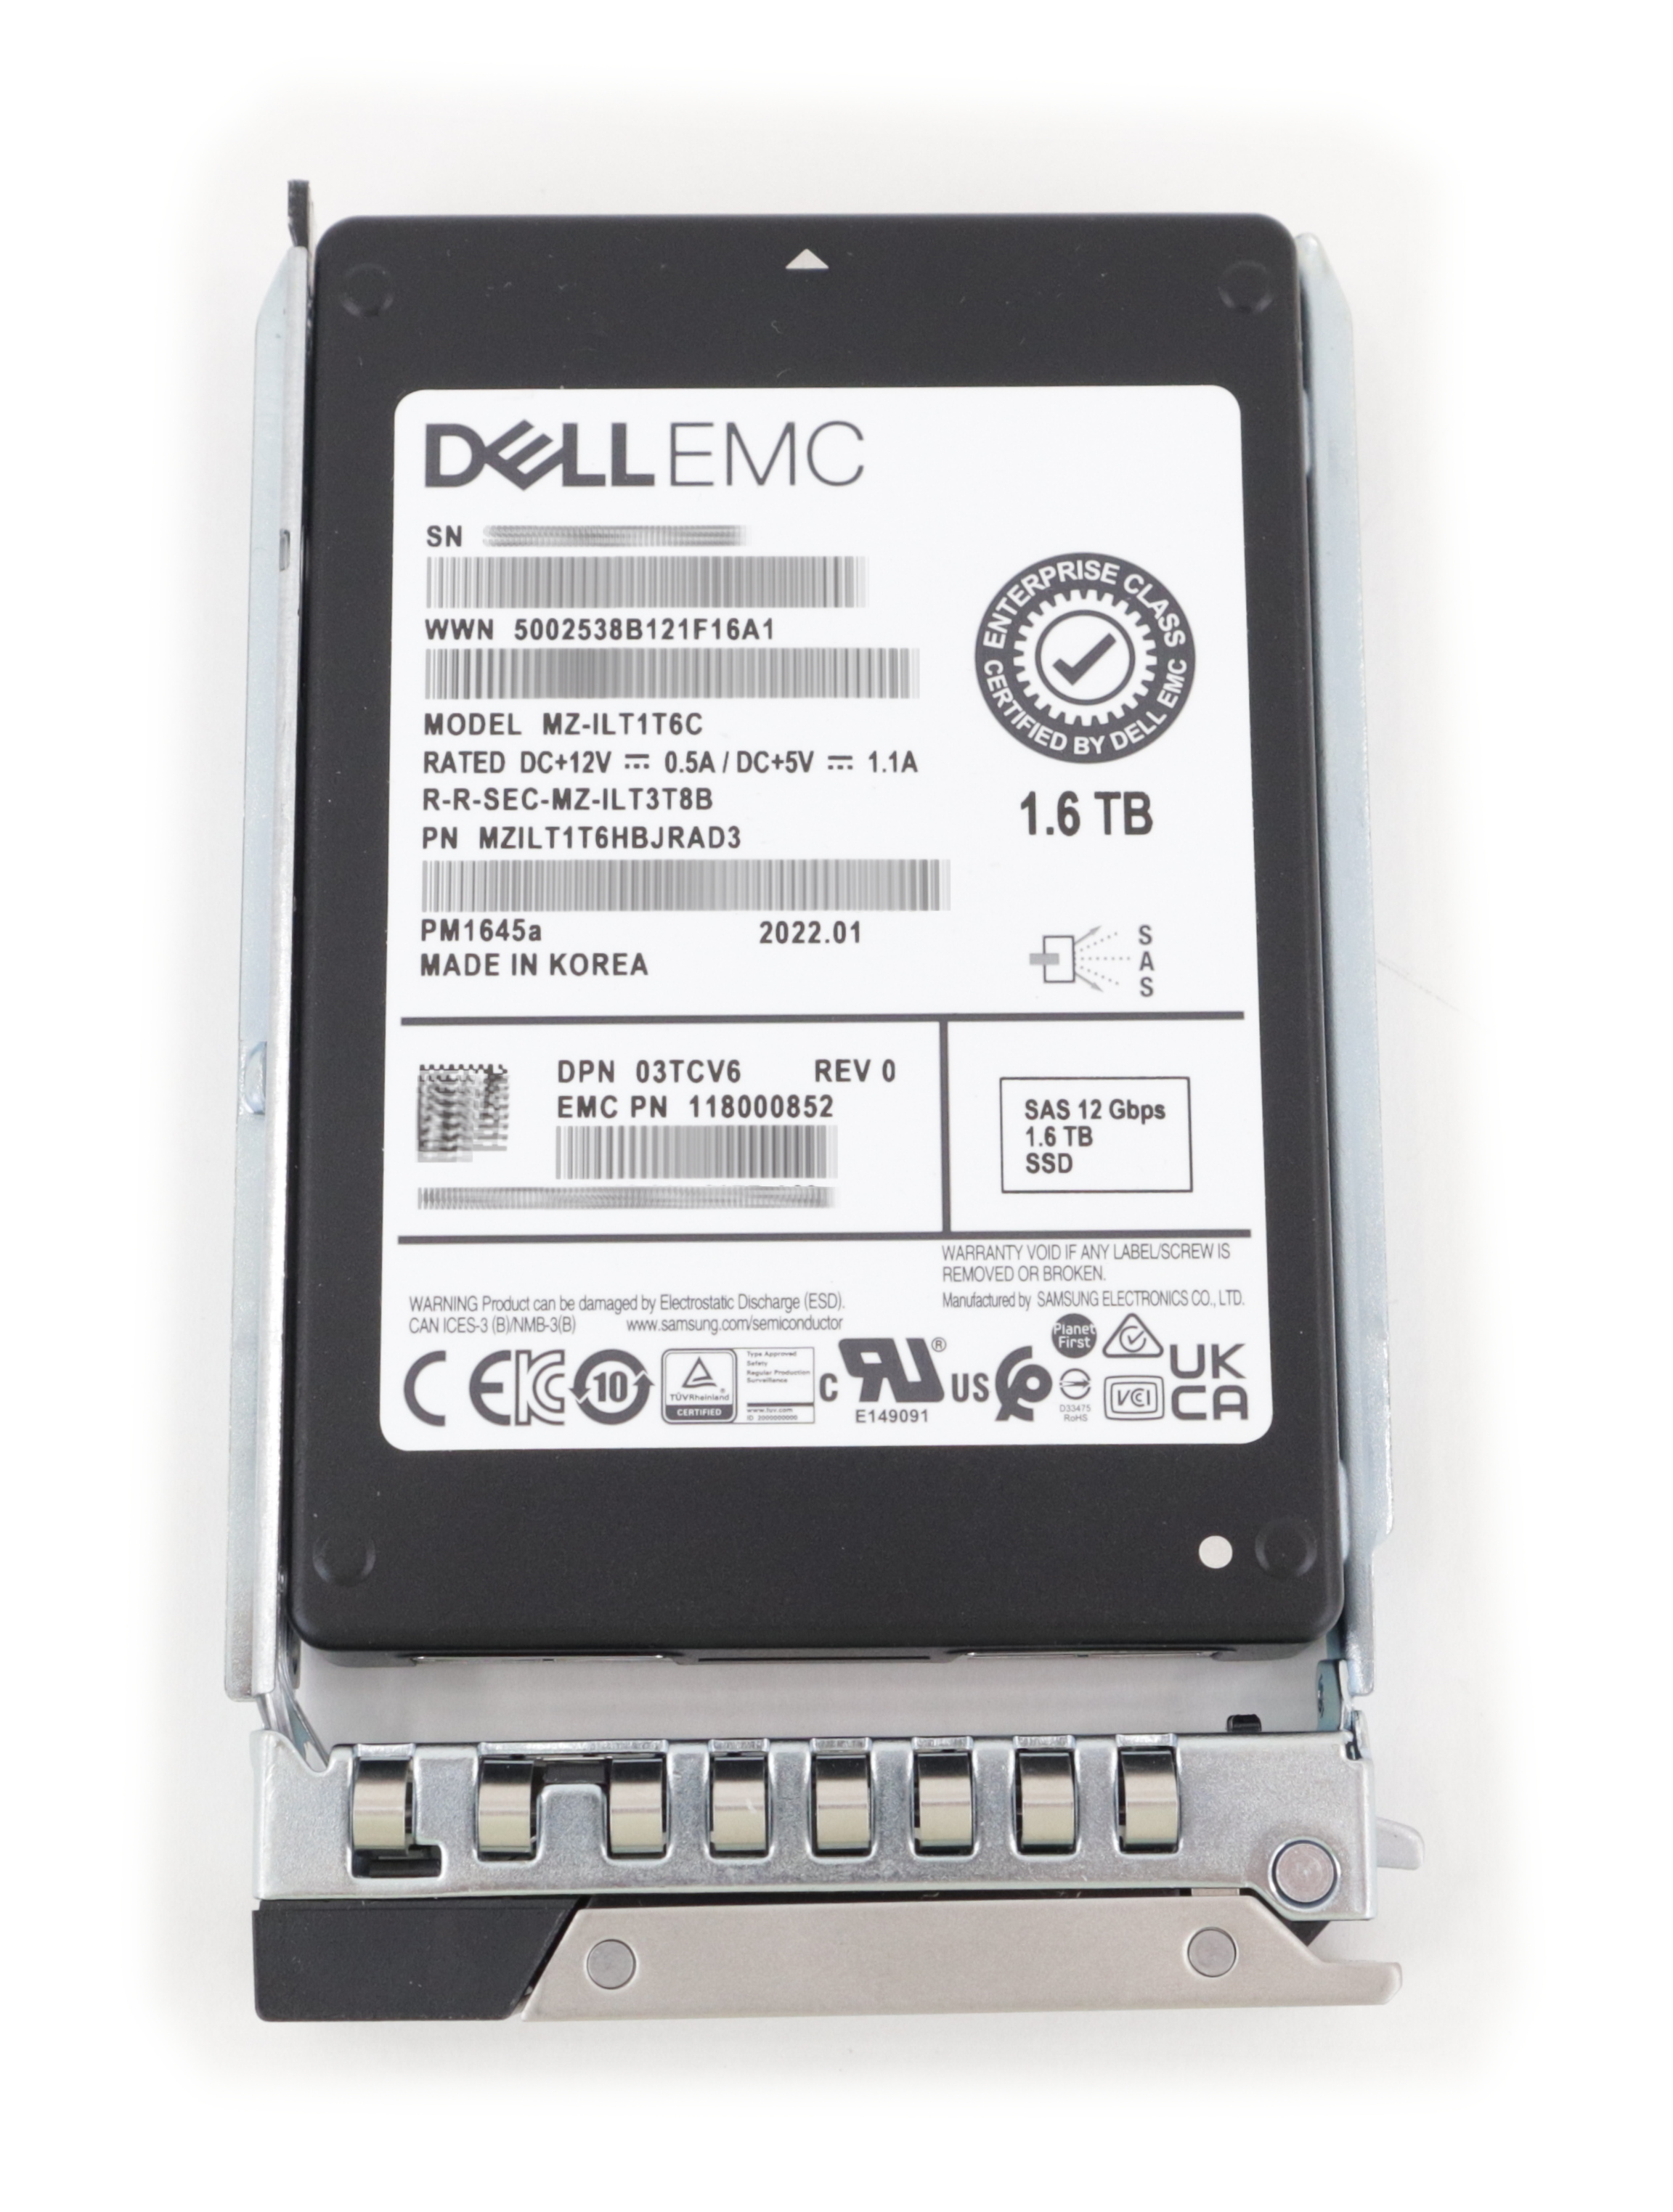 Dell EMC 1.6TB MZ-ILT1T6C PM1645a SSD SAS 12Gb/s 2.5" SFF 3TCV6